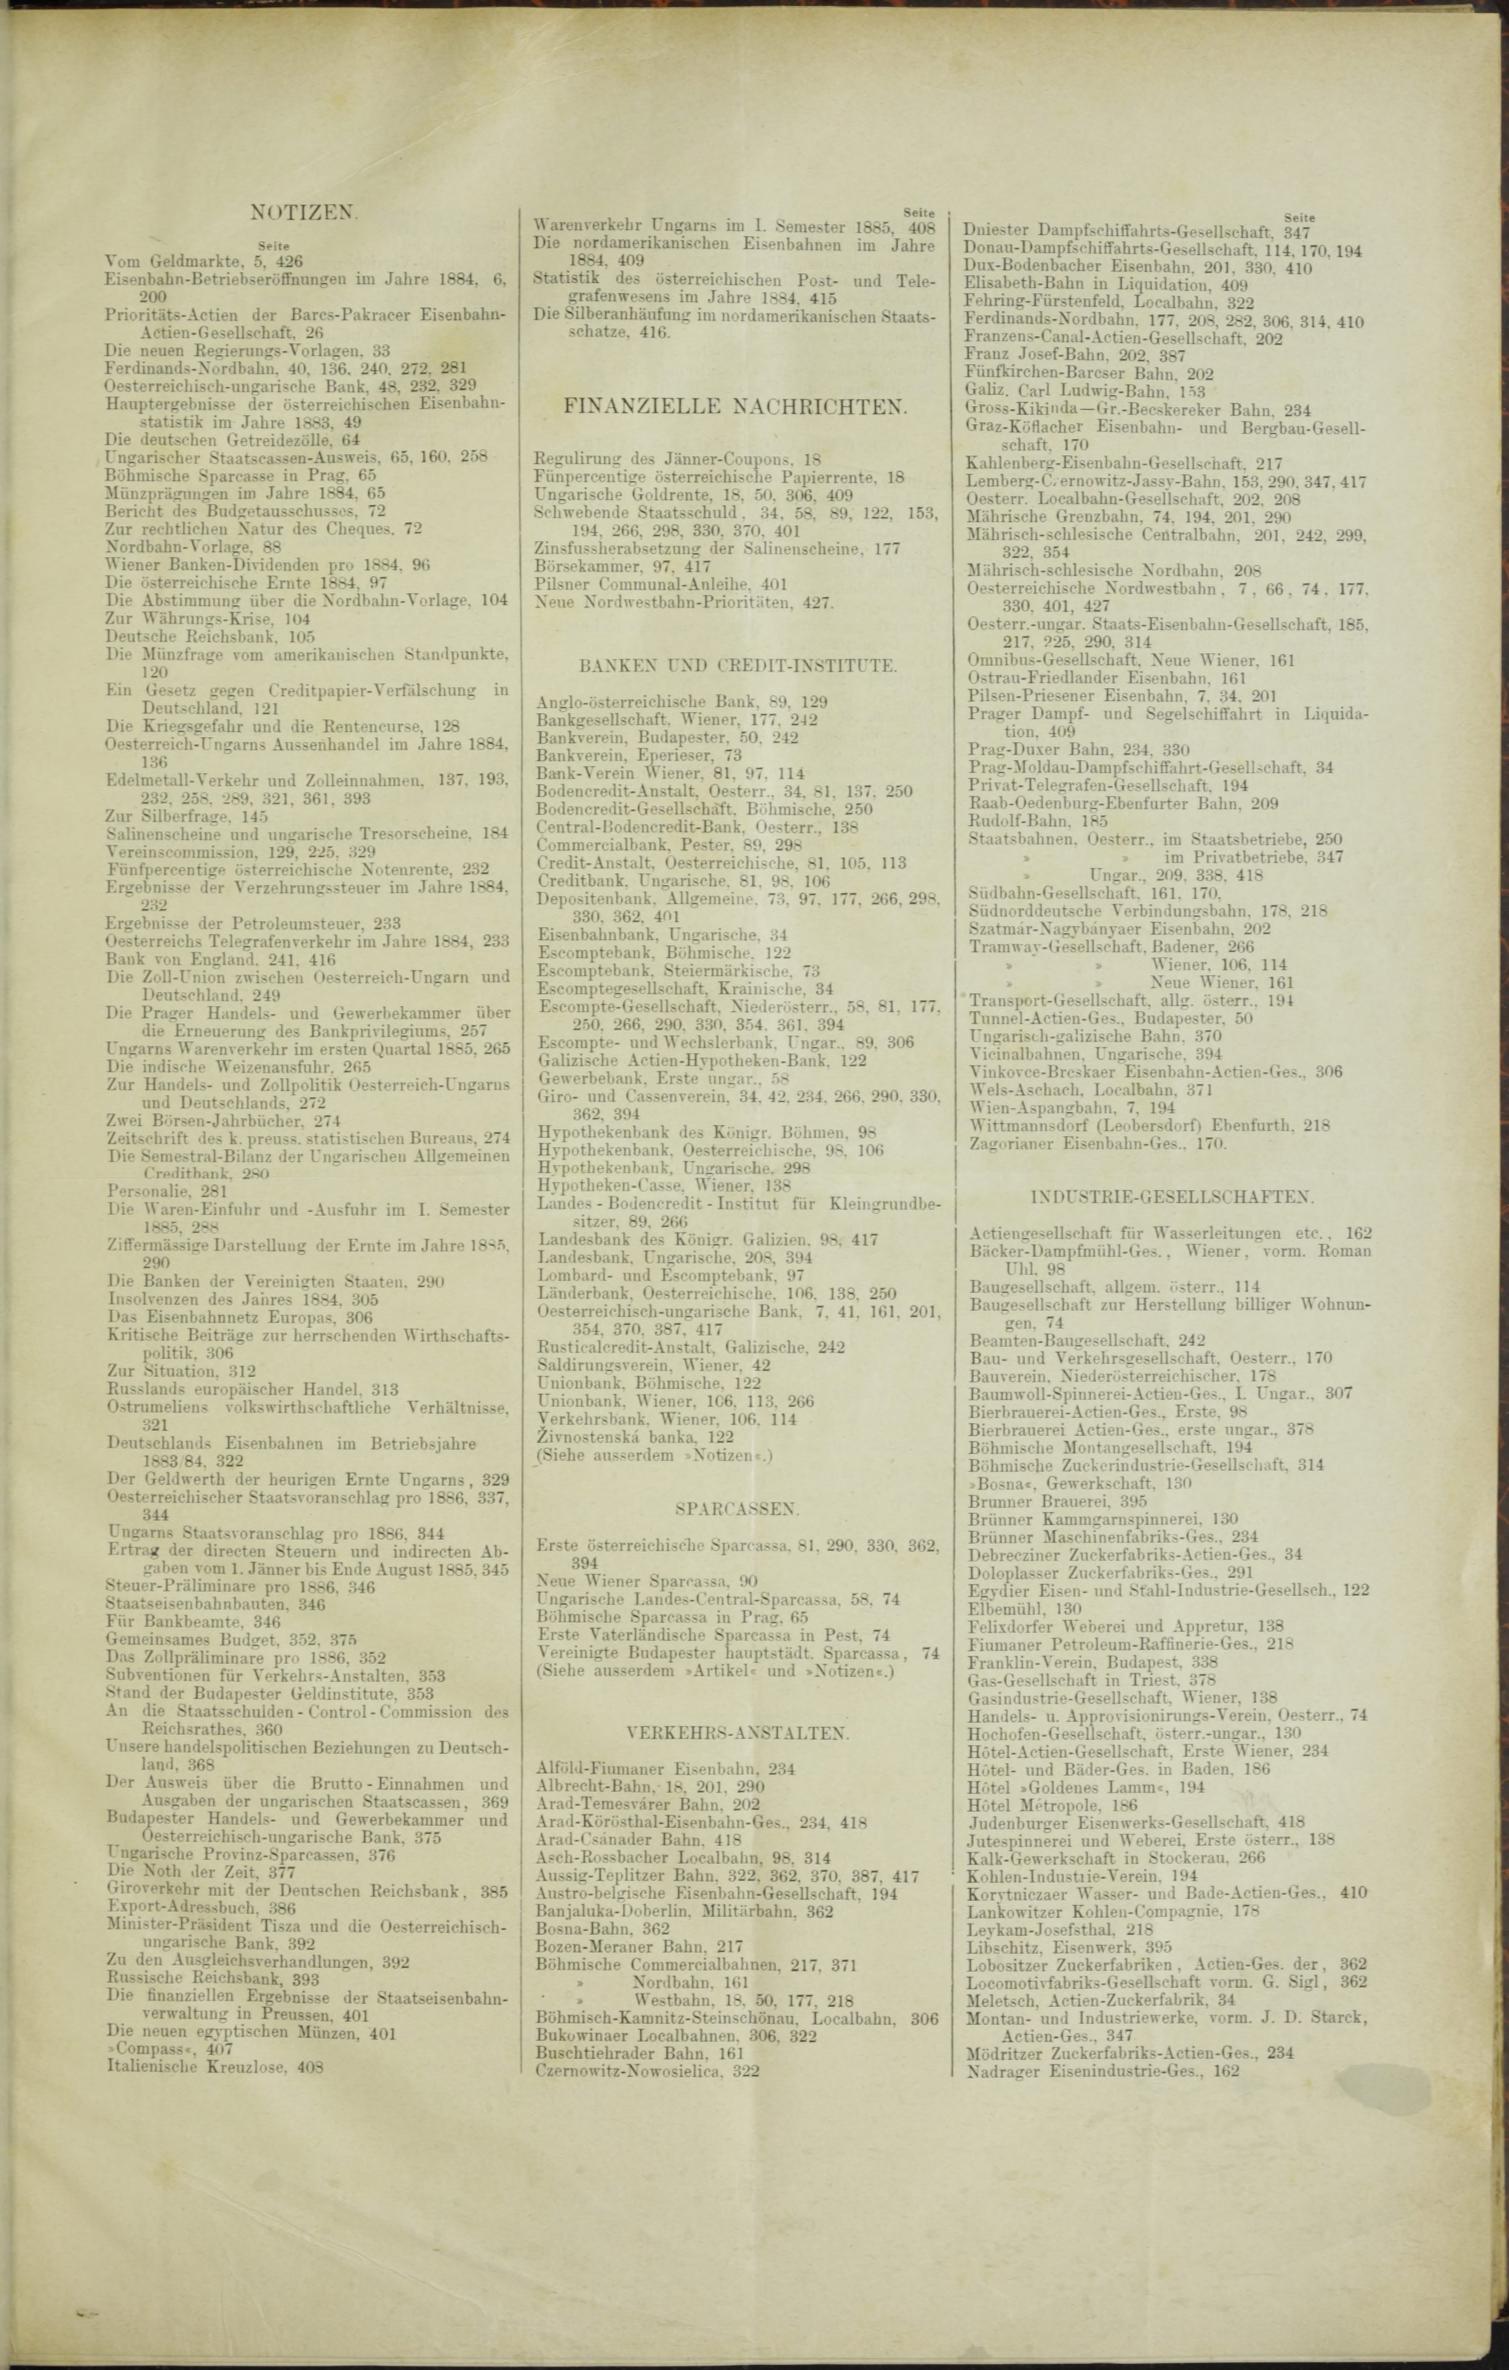 Der Tresor 21.05.1885 - Seite 11